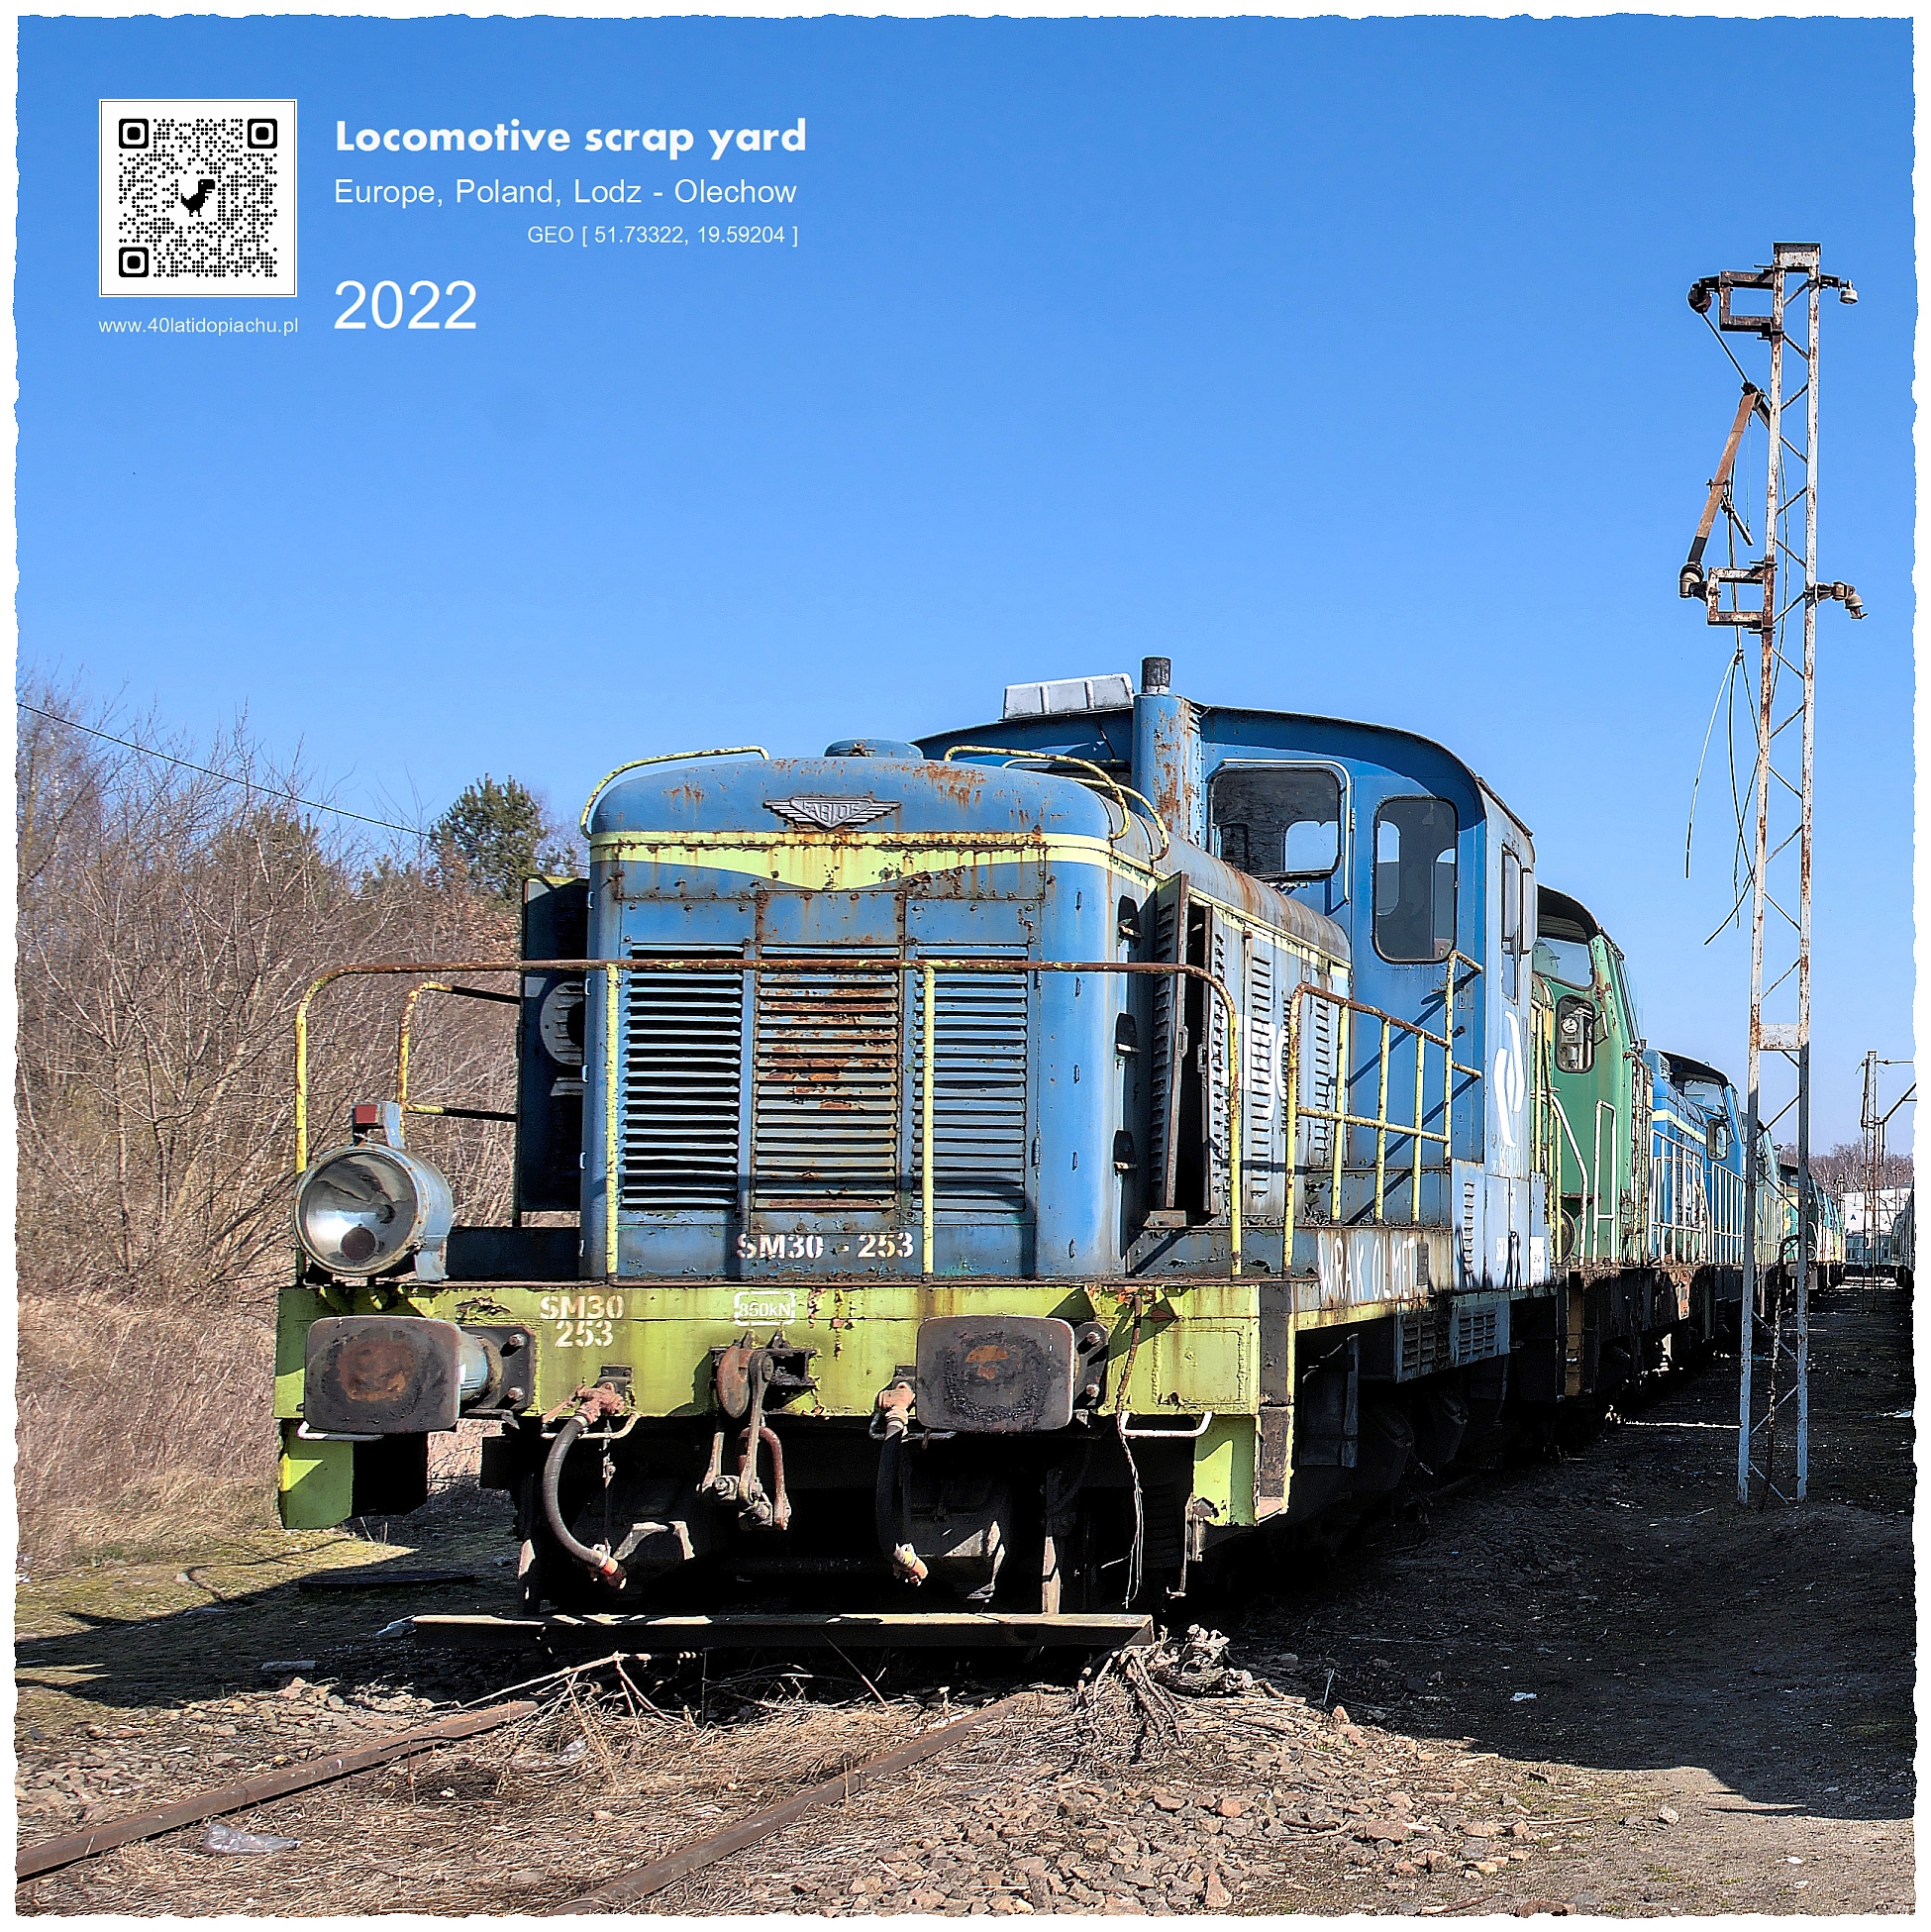 Złomowisko lokomotyw Łódź Olechów